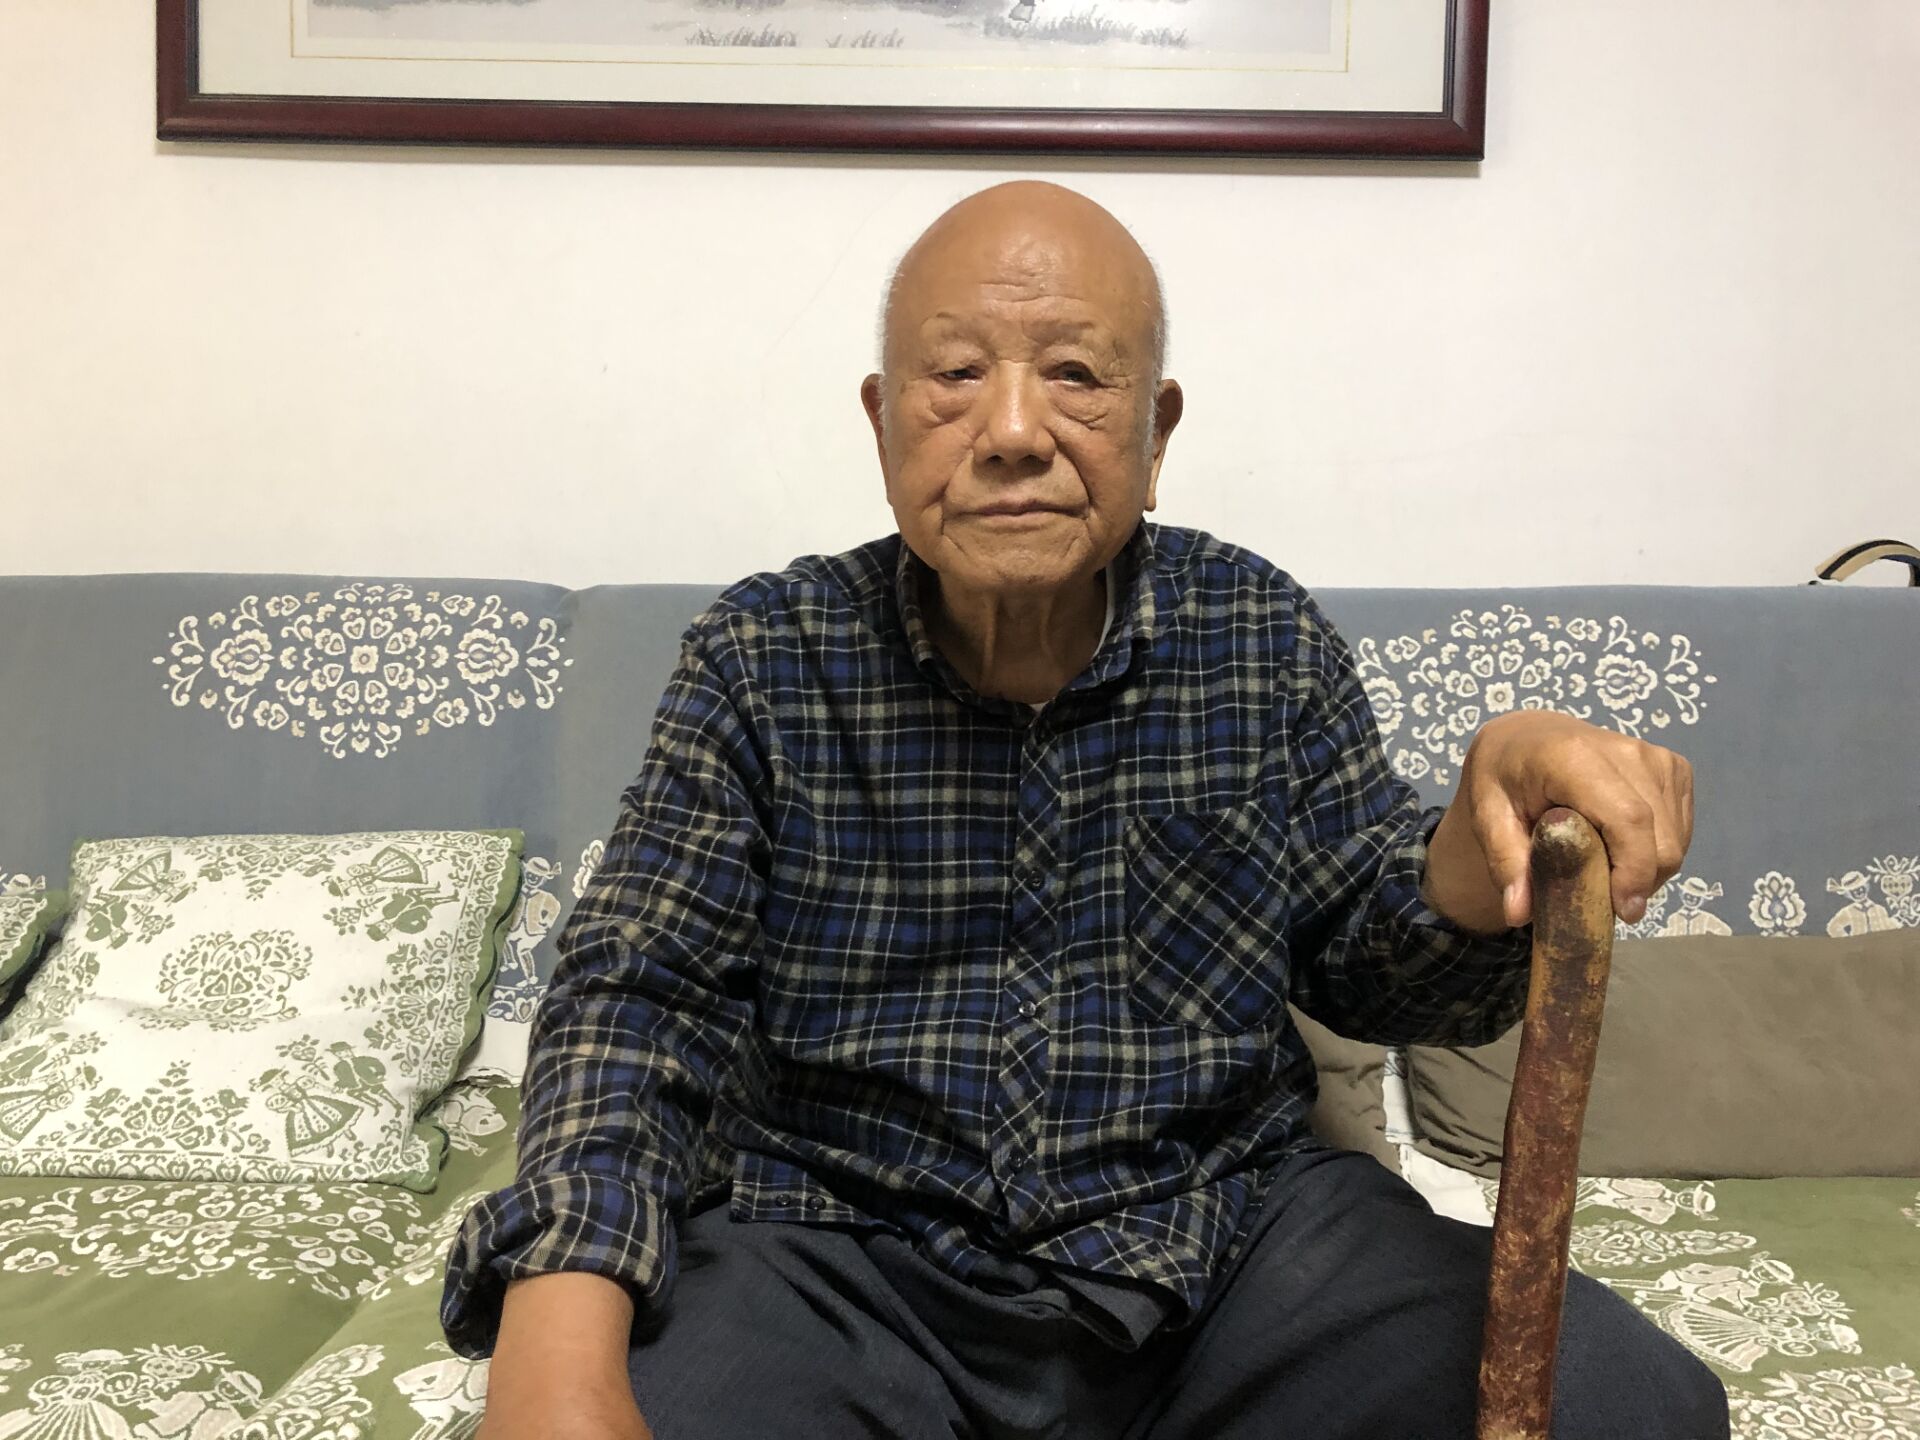 庆祝中国共产党成立100周年主题展览征集实物!98岁老党员：当年我拿着把小铁锨奔赴抗美援朝战场